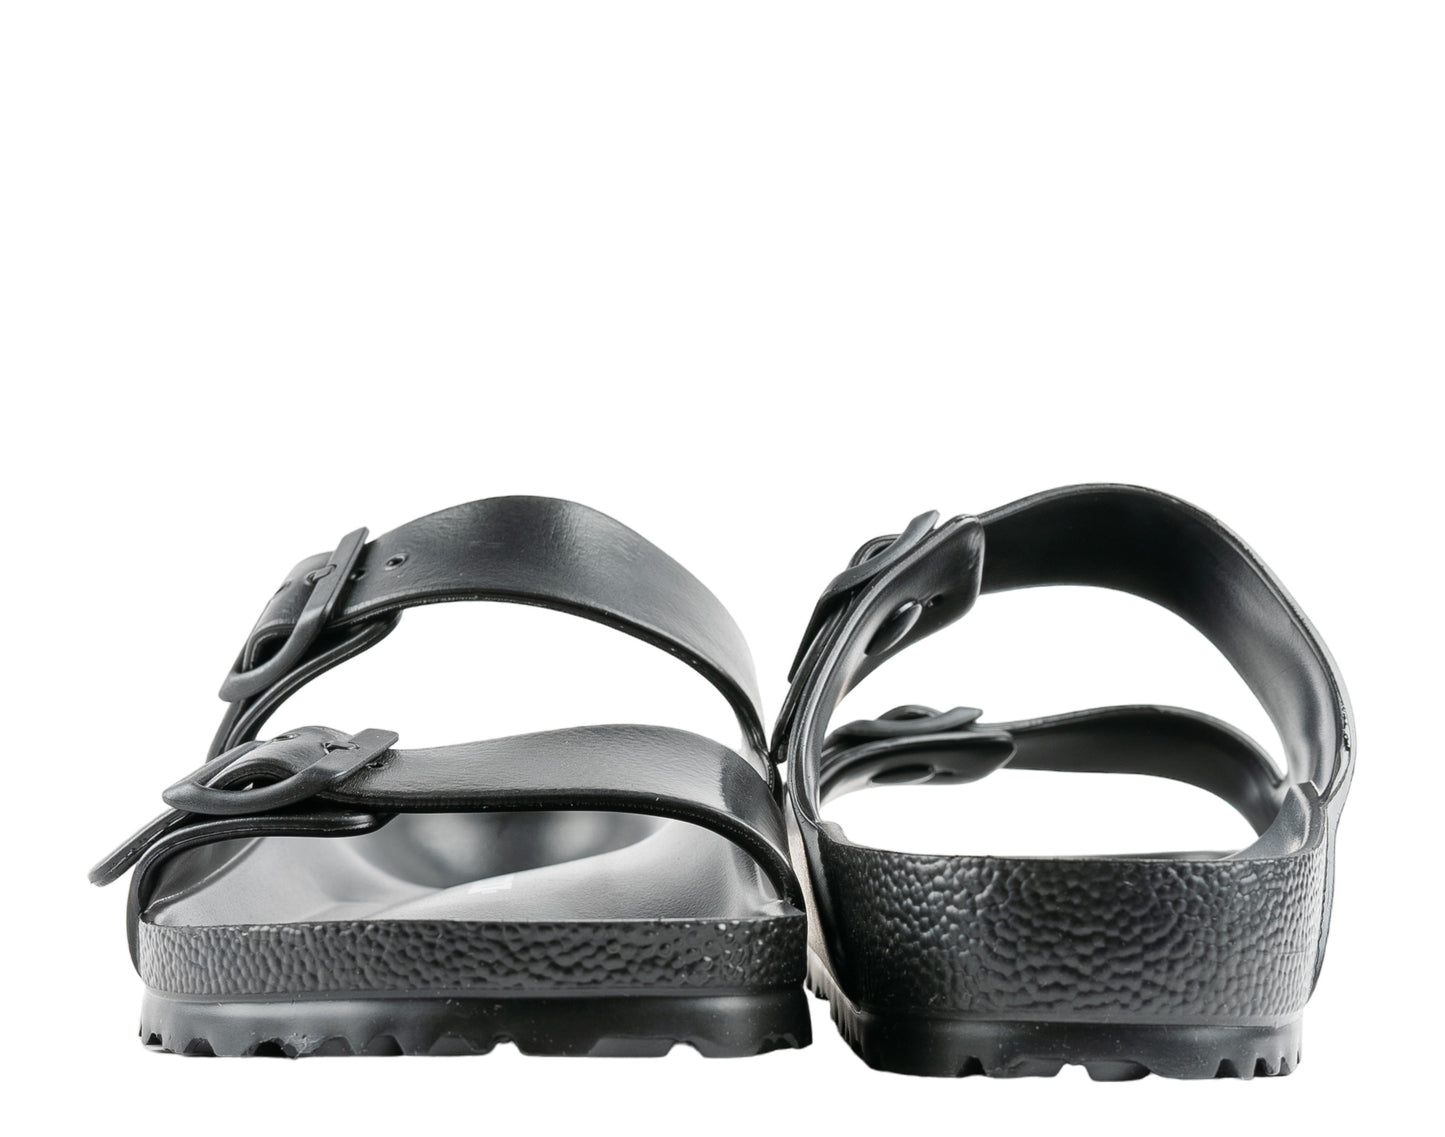 Birkenstock Arizona Essentials Eva Unisex Sandals